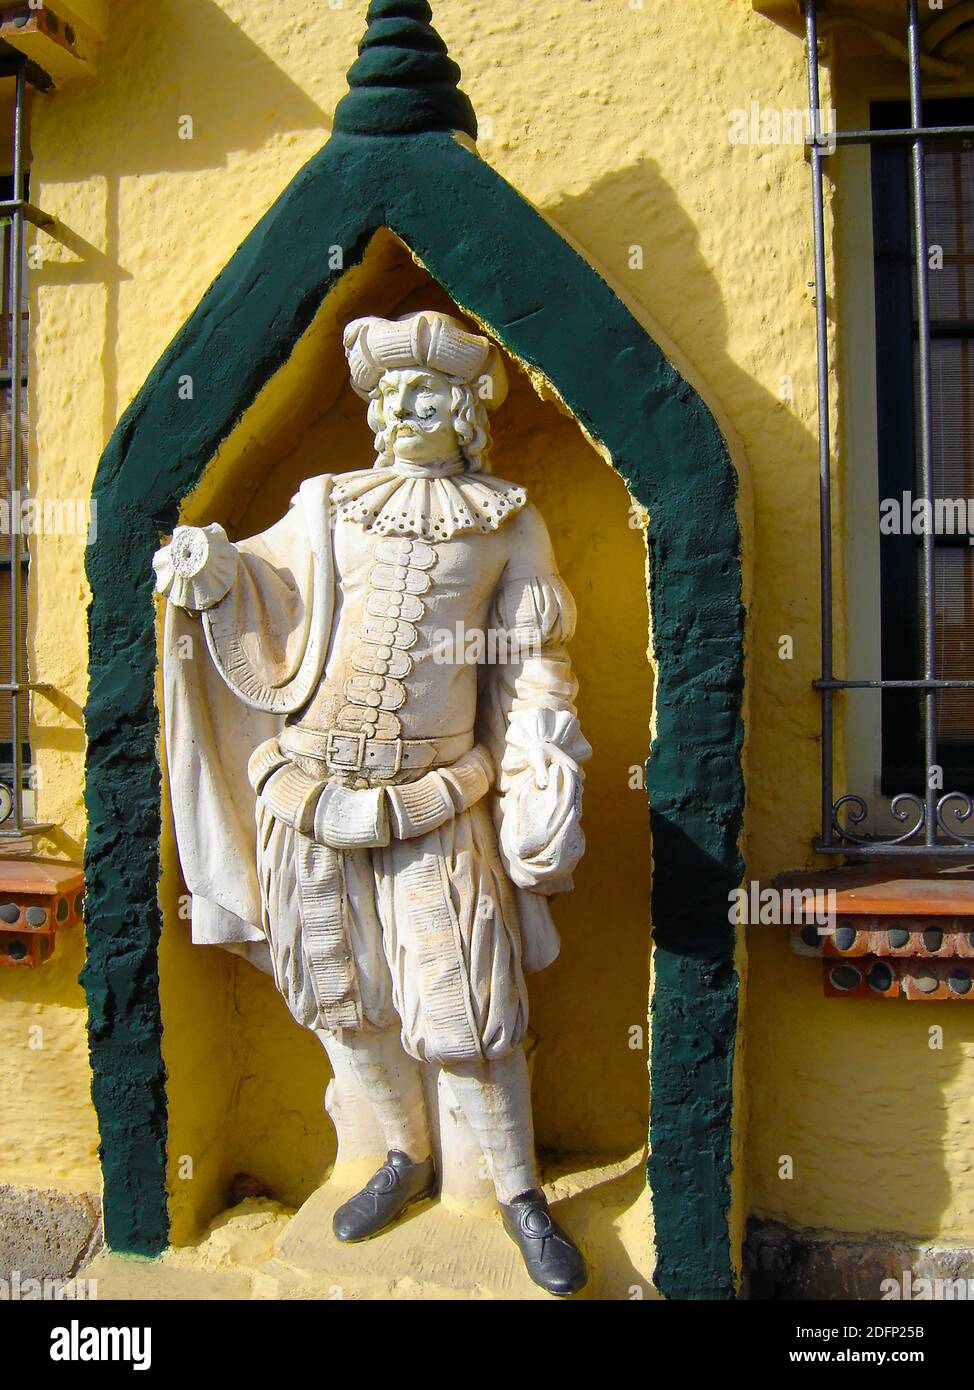 Une statue d'un cavalier espagnol / caballero / caballarius (sans son cheval ou son épée). Situé à l'extérieur d'un bâtiment dans le sud de l'Espagne. Le terme pourrait être utilisé pour un soldat monté, un aristocrate, chevalier ou gentleman. Banque D'Images